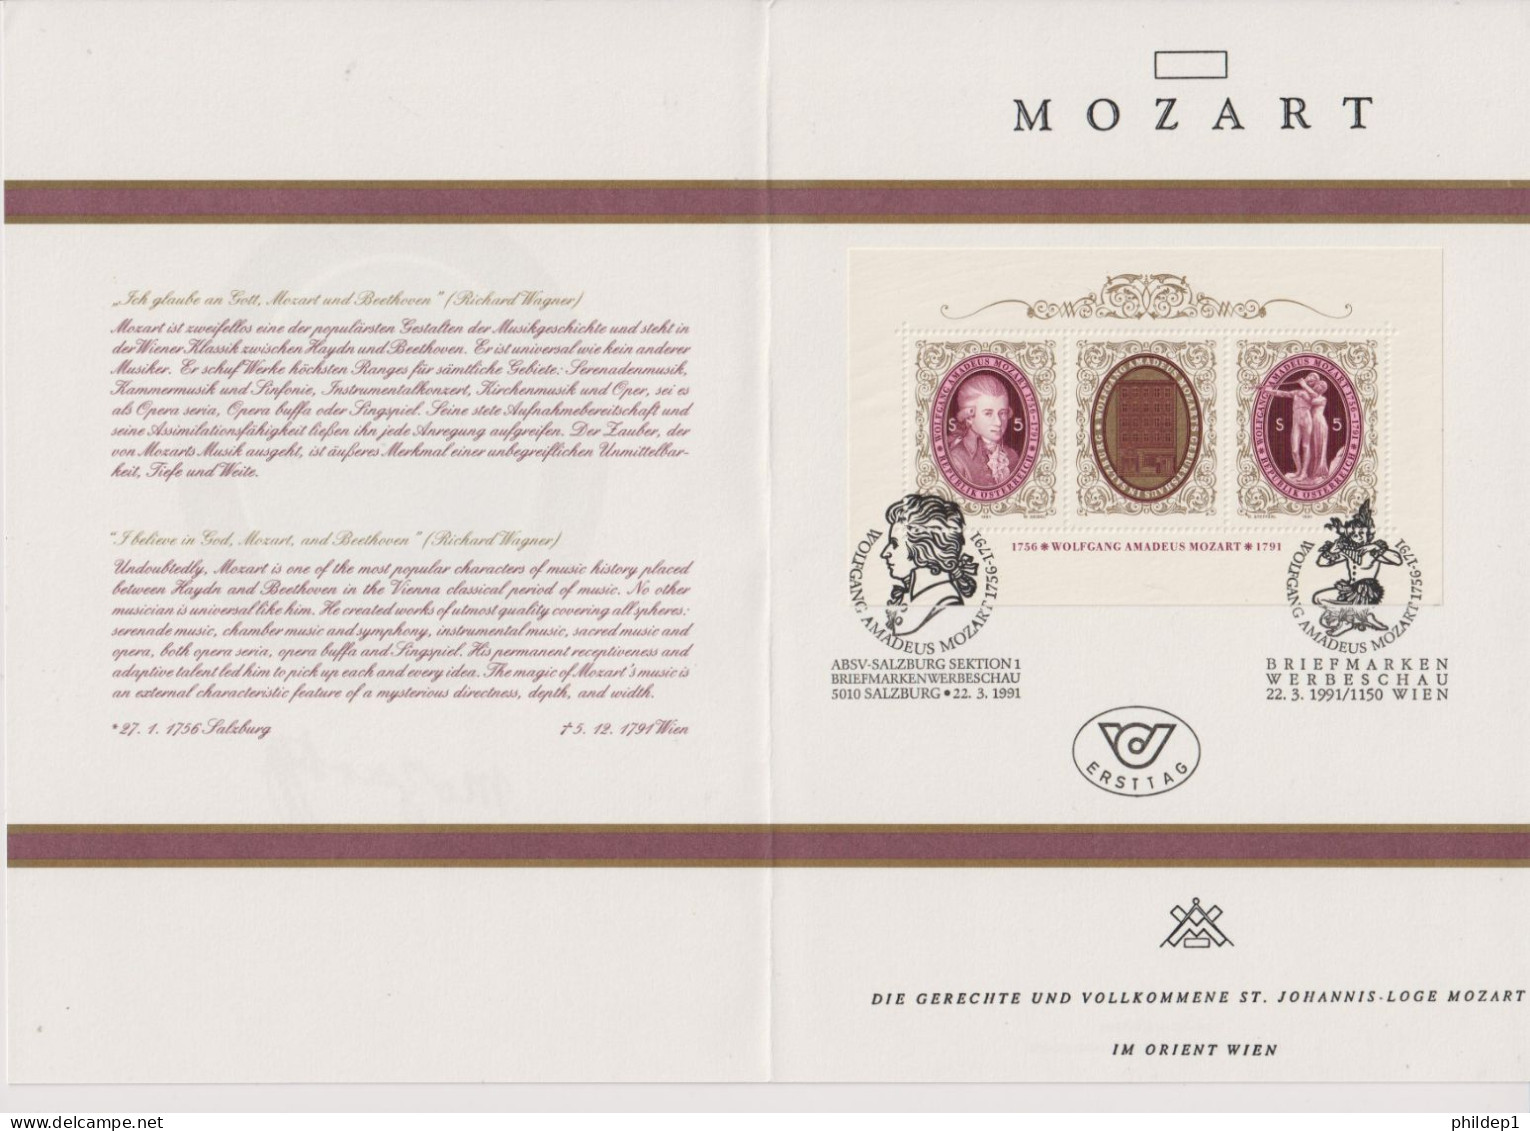 Autriche: Franc Maçonnerie: Superbe Document Sur Mozart Imprimé En Autriche Avec Photo Changeante - Franc-Maçonnerie